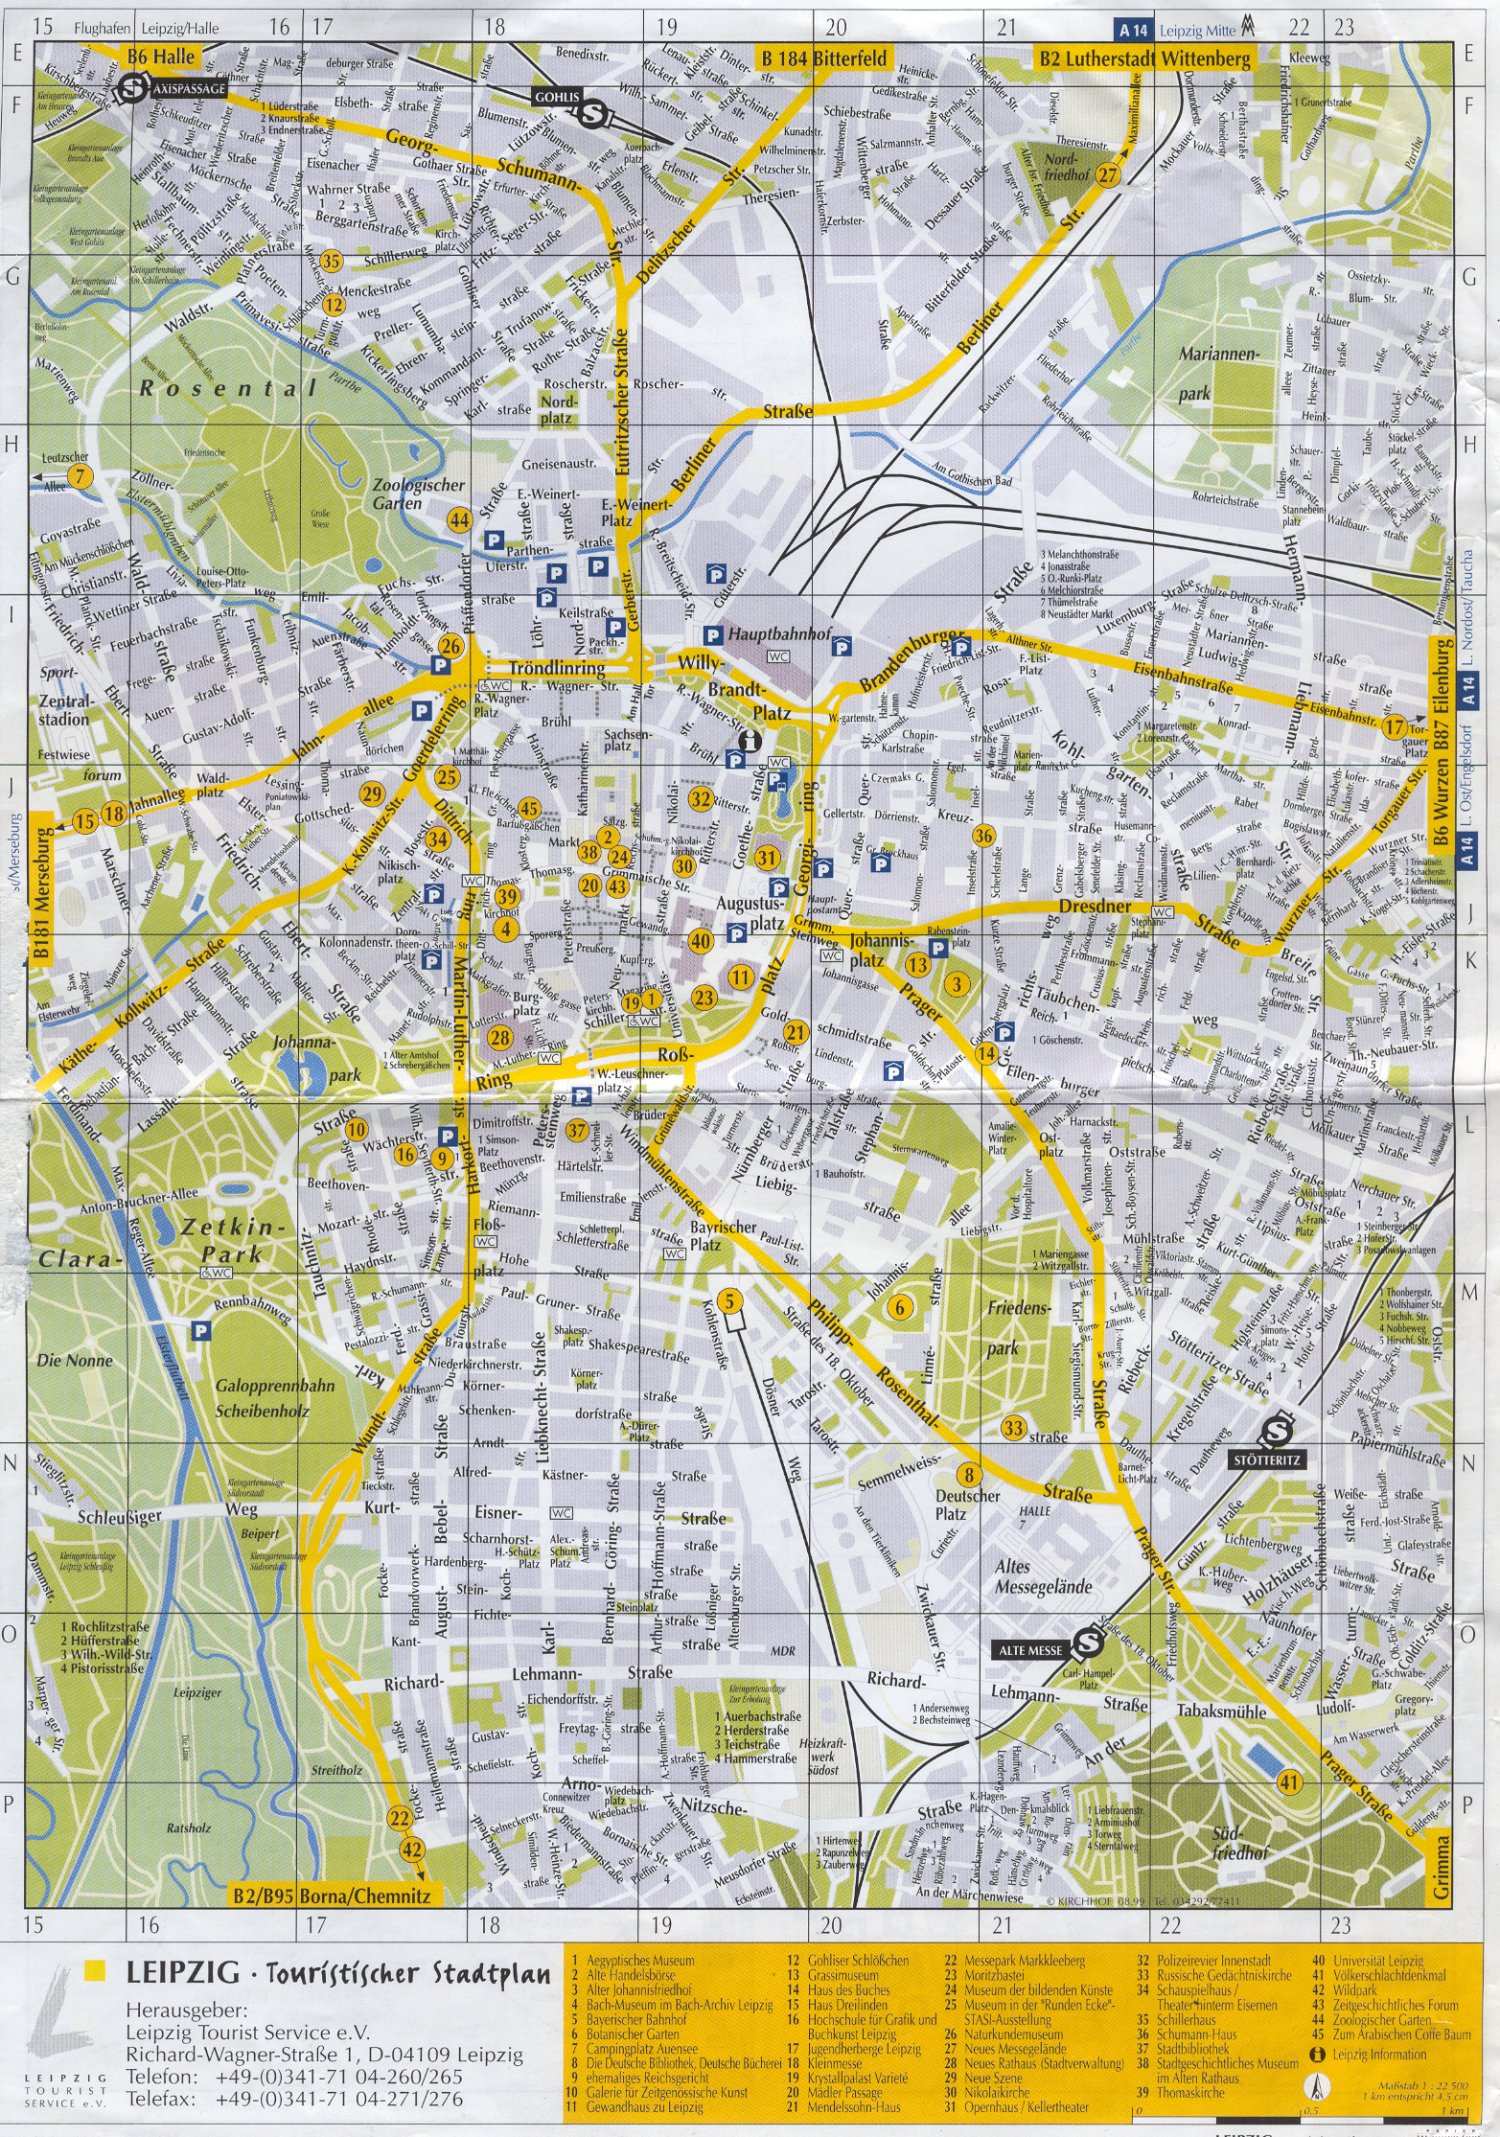 Stadtplan Von Leipzig Detaillierte Gedruckte Karten Von Leipzig Deutschland Der Herunterladenmoglichkeit